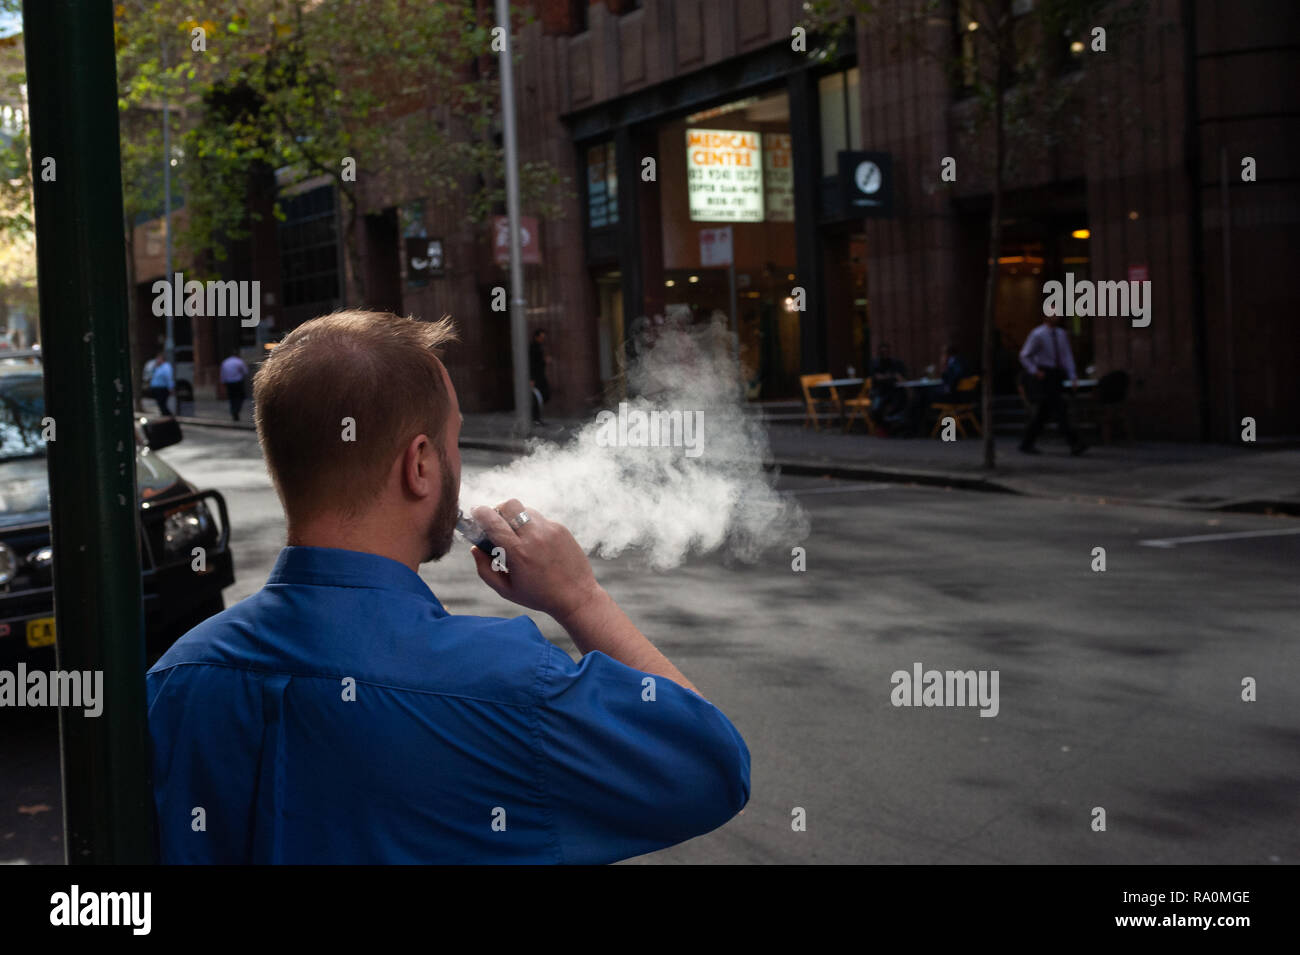 10.05.2018, Sydney, Nuovo Galles del Sud, Australien - Ein Mann raucht auf einer Strasse im Geschaeftsviertel von Sydney eine elektrische Zigarette / E-Zig Foto Stock